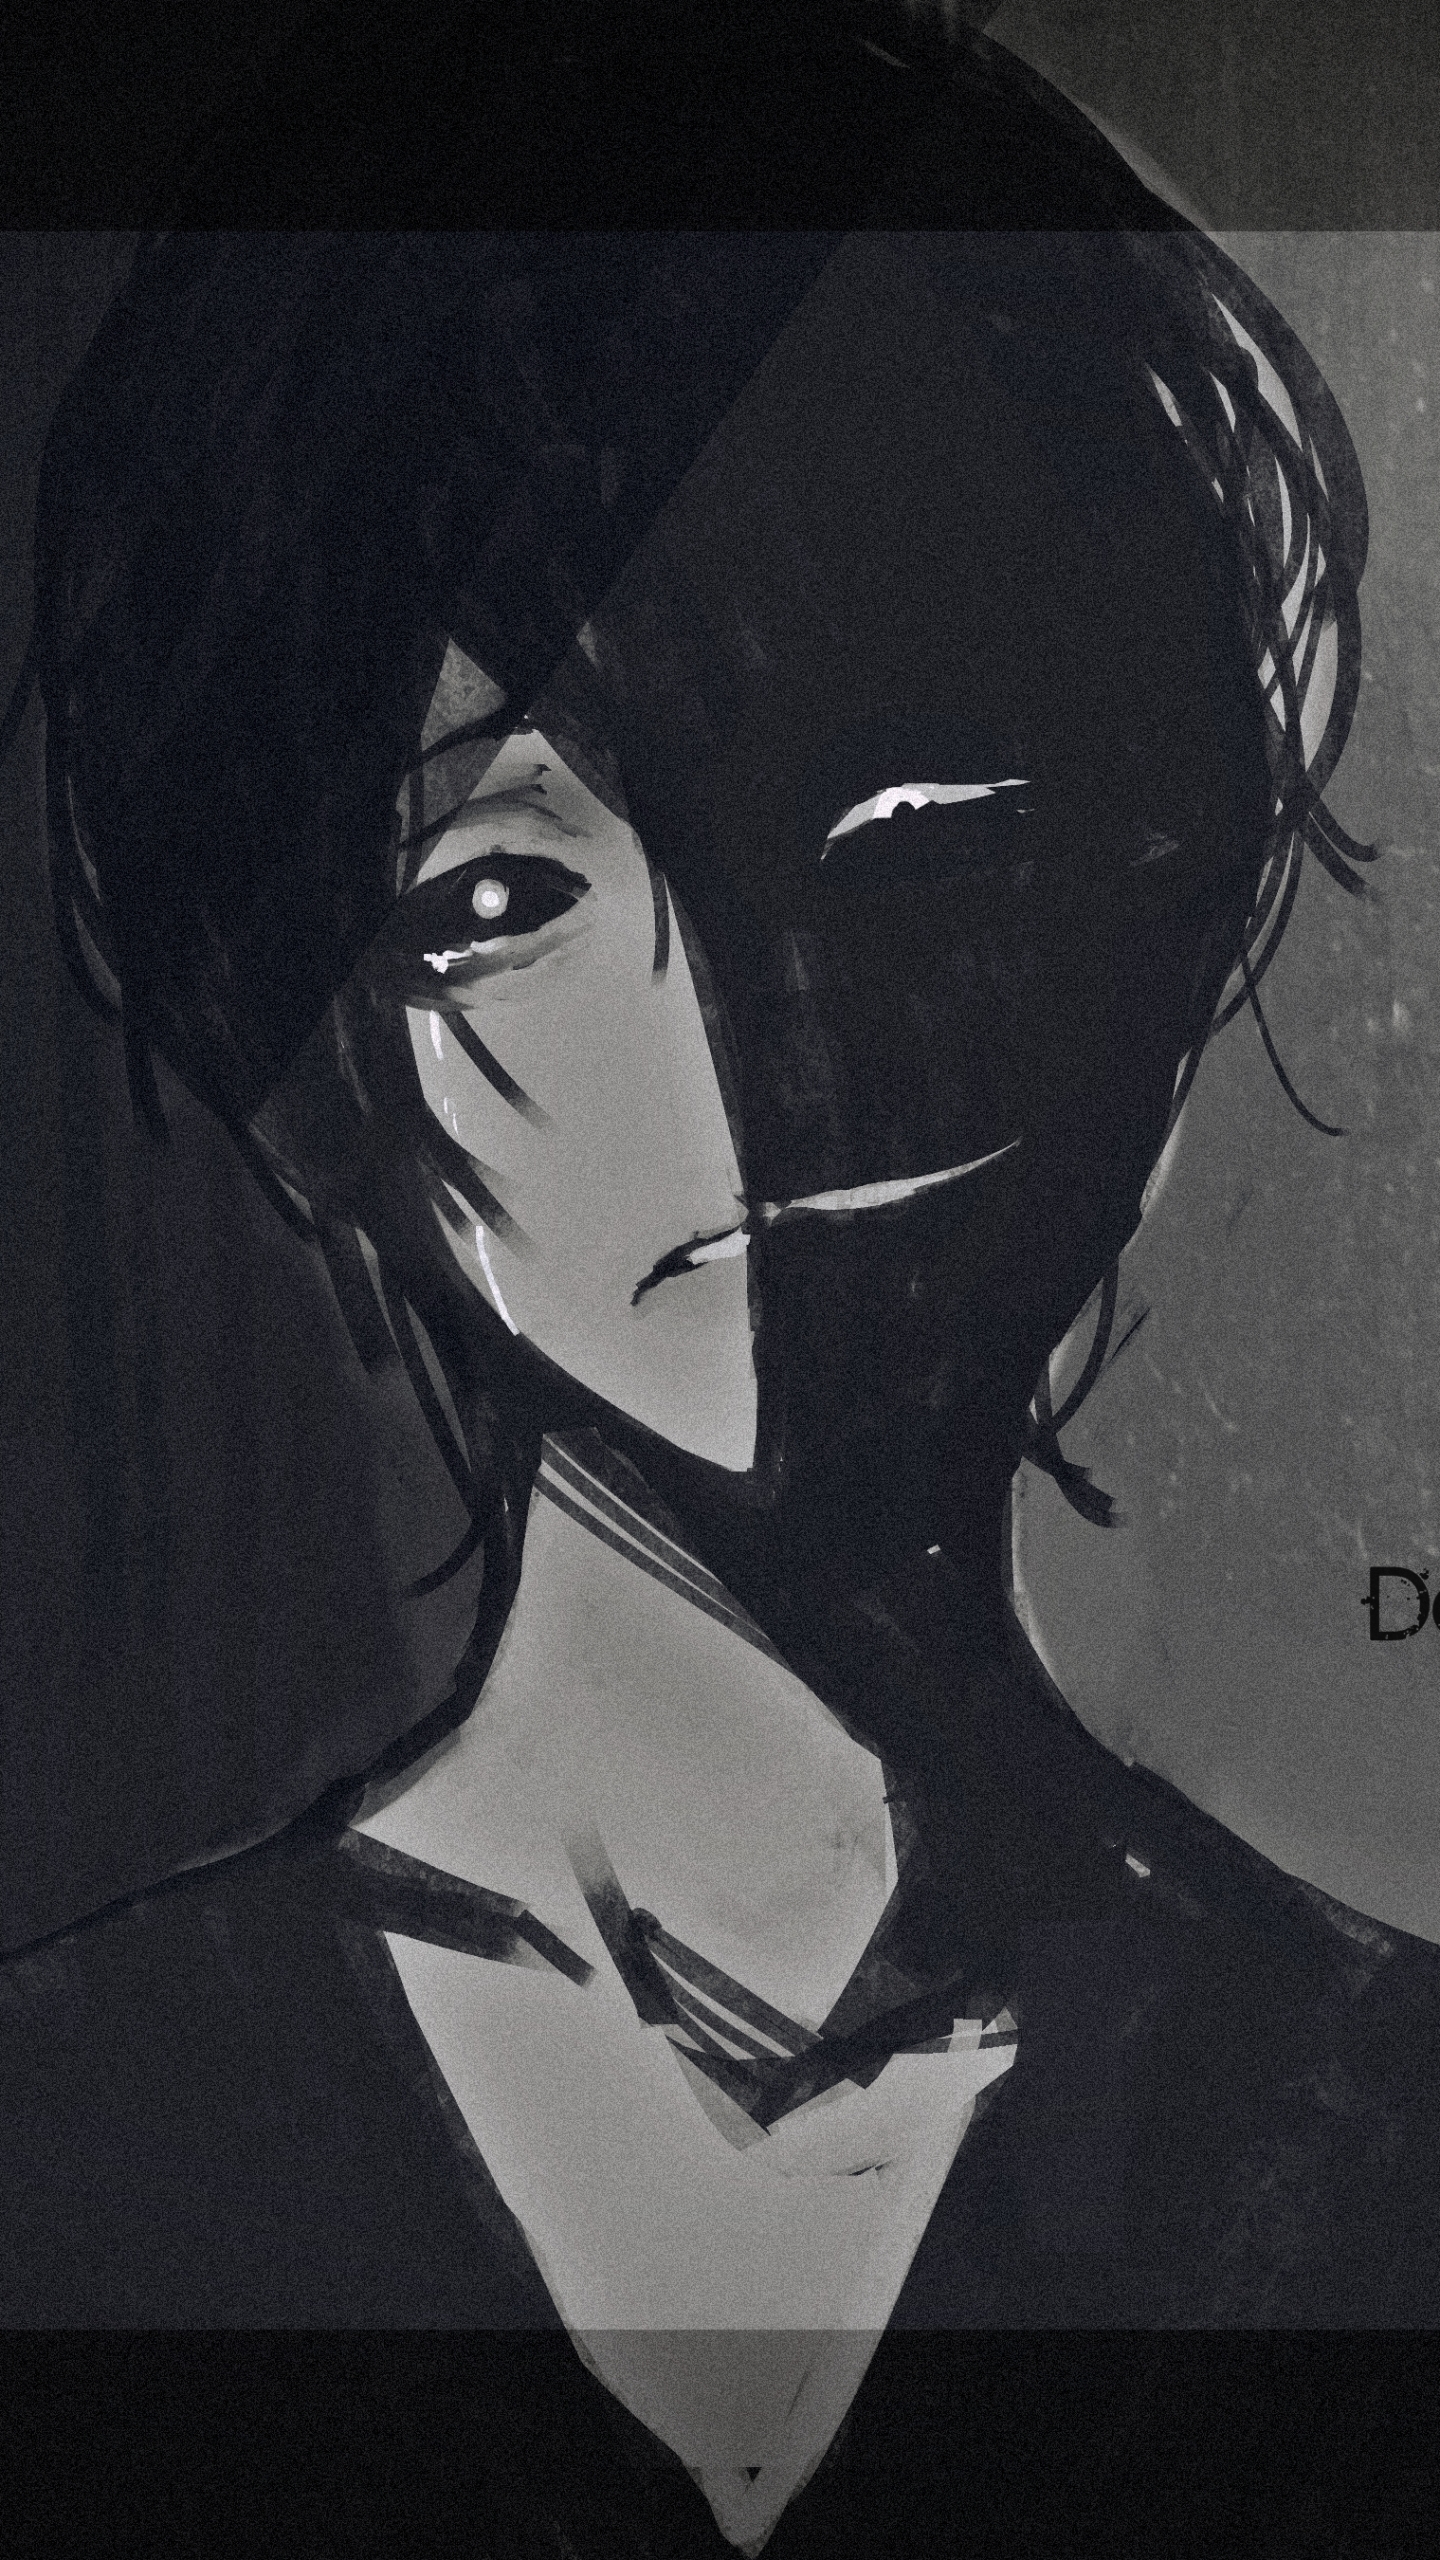 anime wallpaper telefon,schwarzes haar,schwarz und weiß,porträt,zeichnung,einfarbig